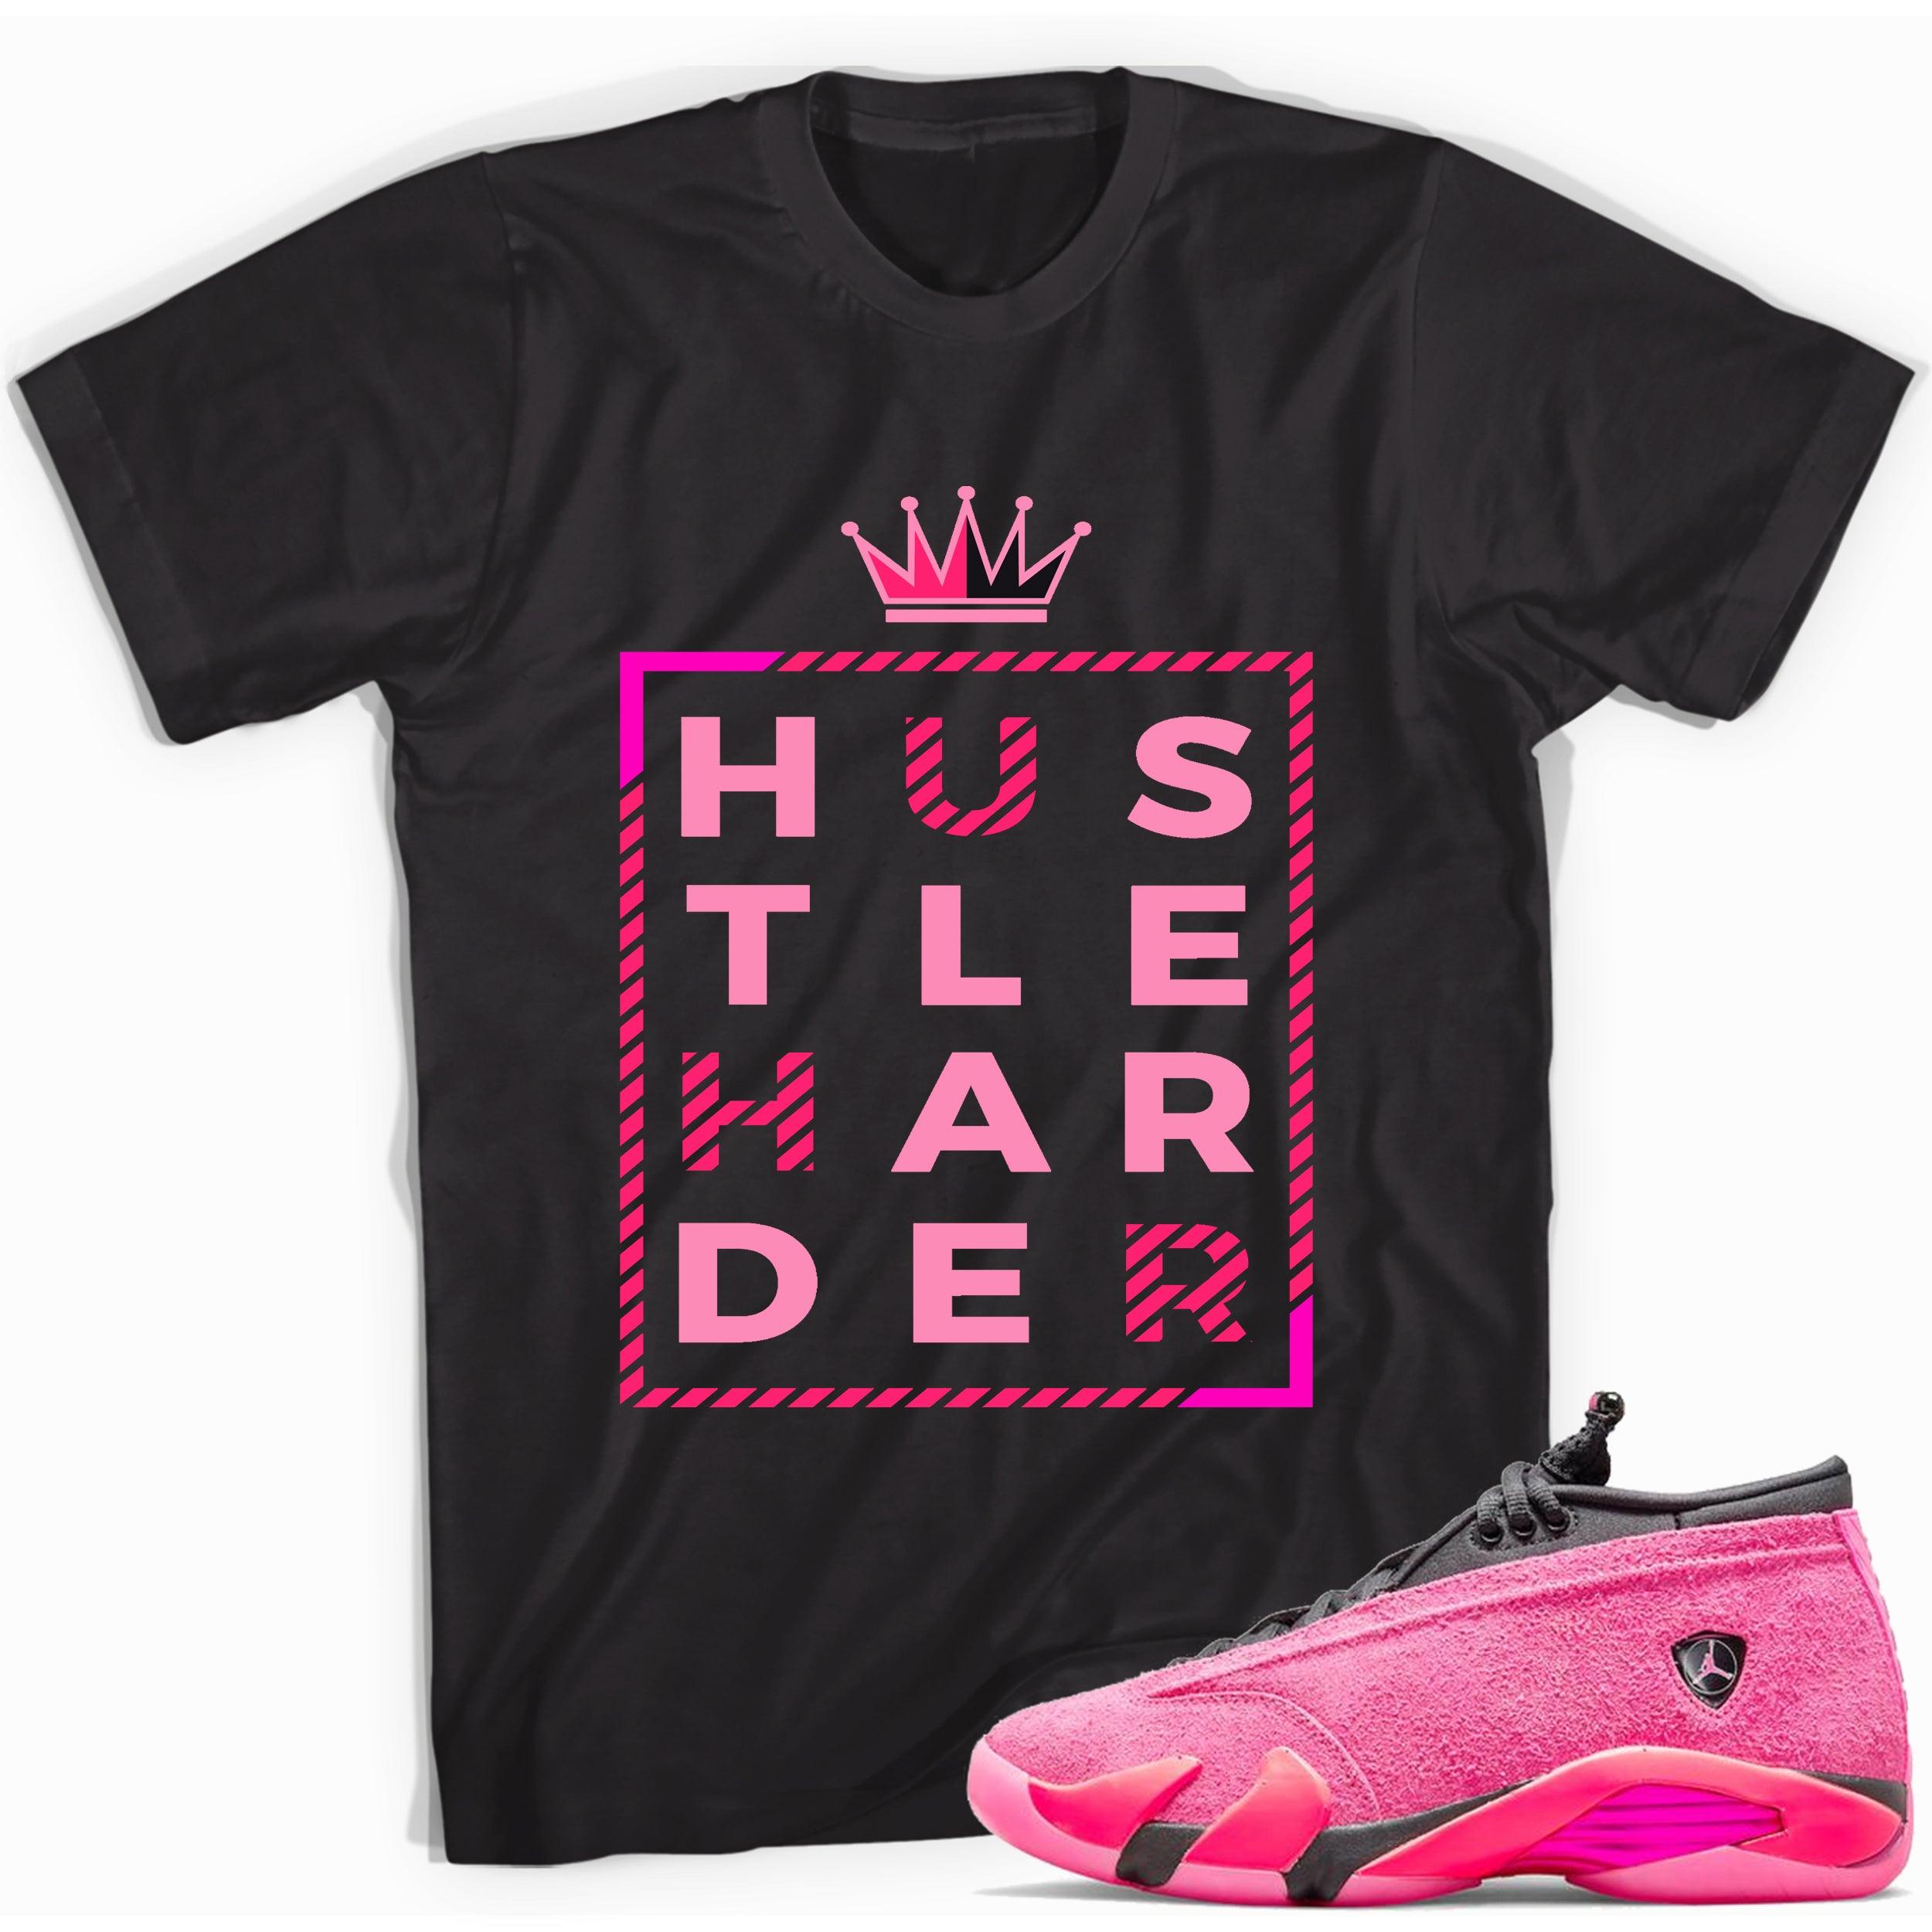 Black Hustle Harder Shirt Jordan 14s Low Shocking Pink photo